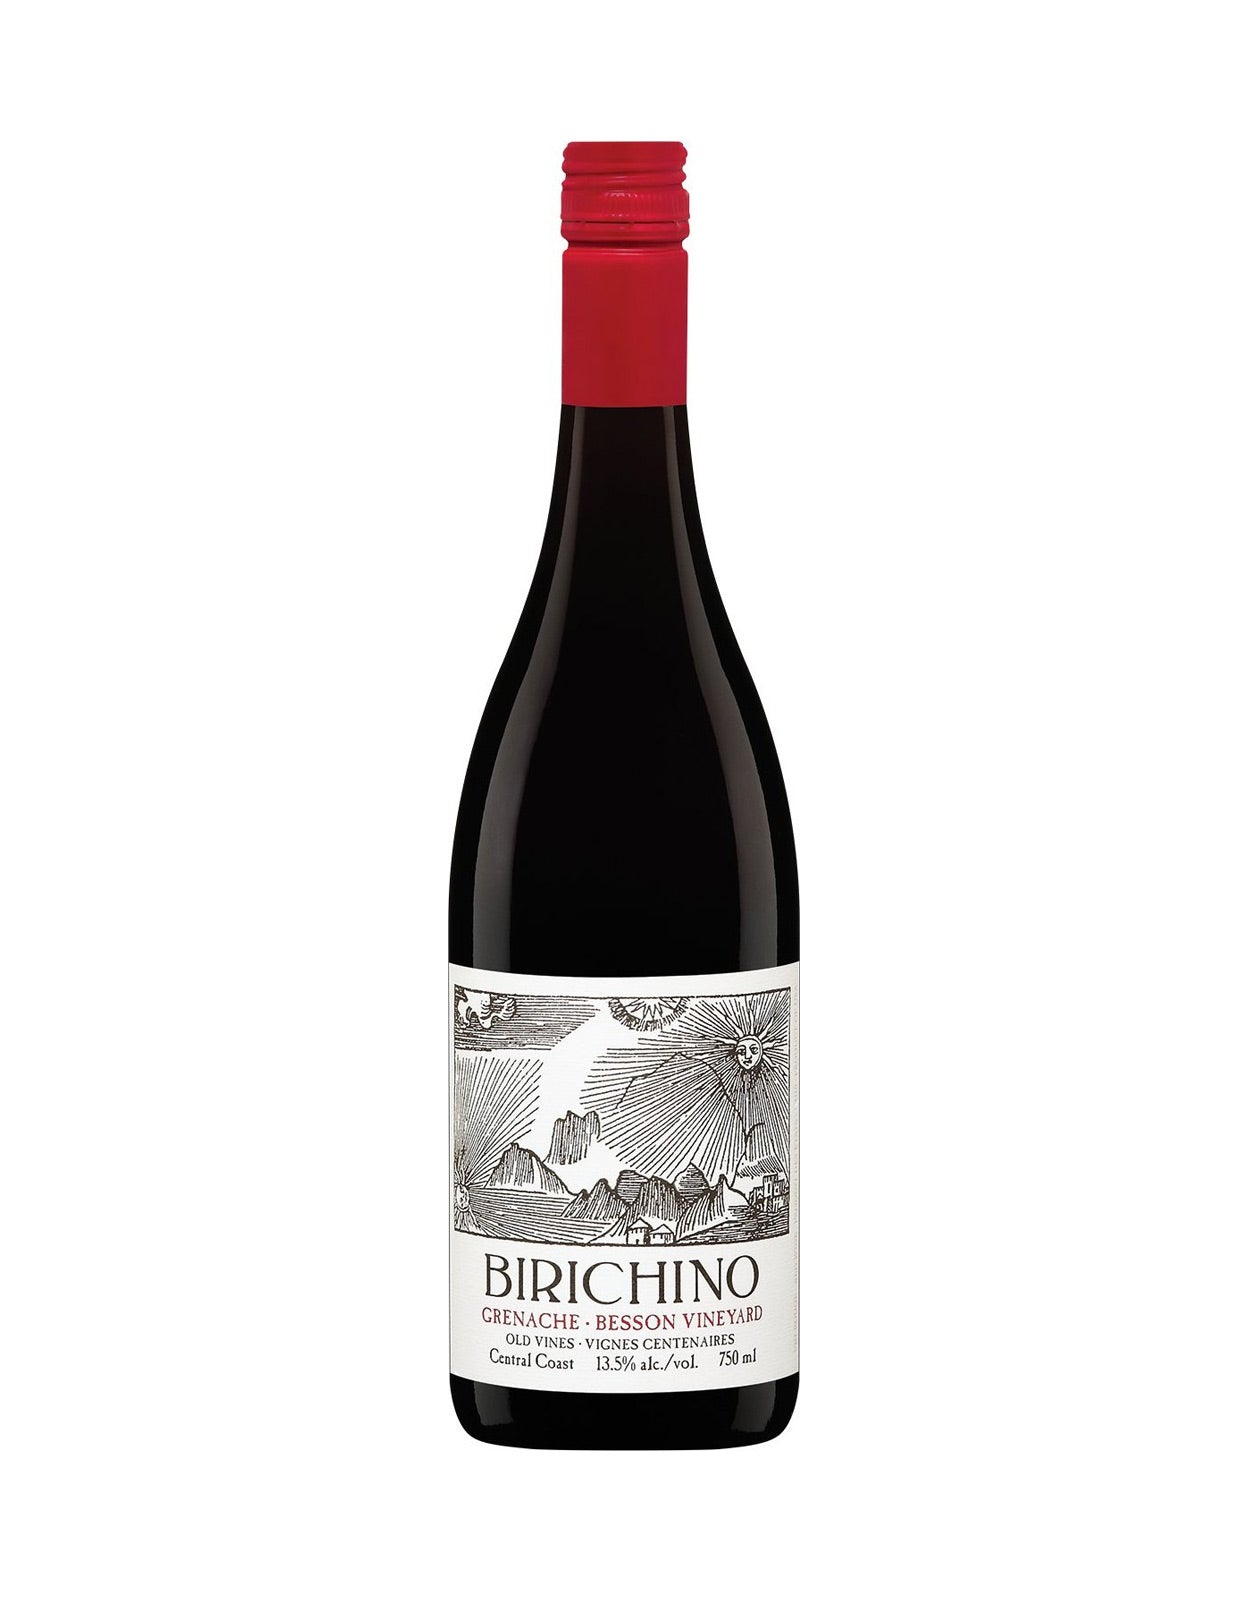 Birichino Grenache Old Vines Besson Vineyards 2018